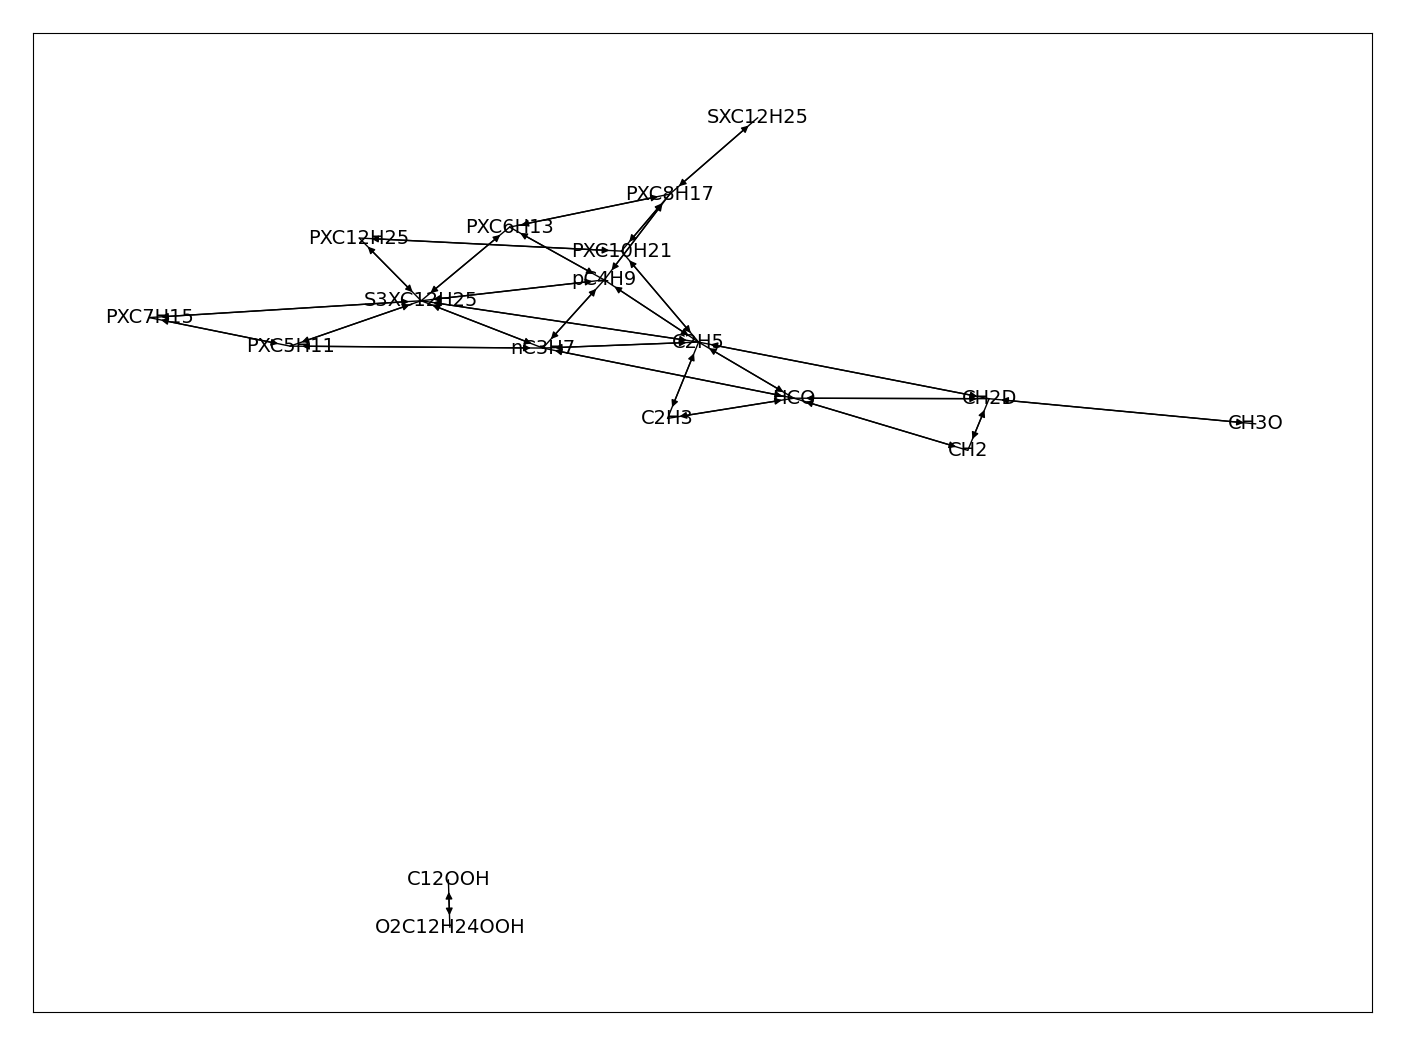 Directed graph of dependencies between QSS species